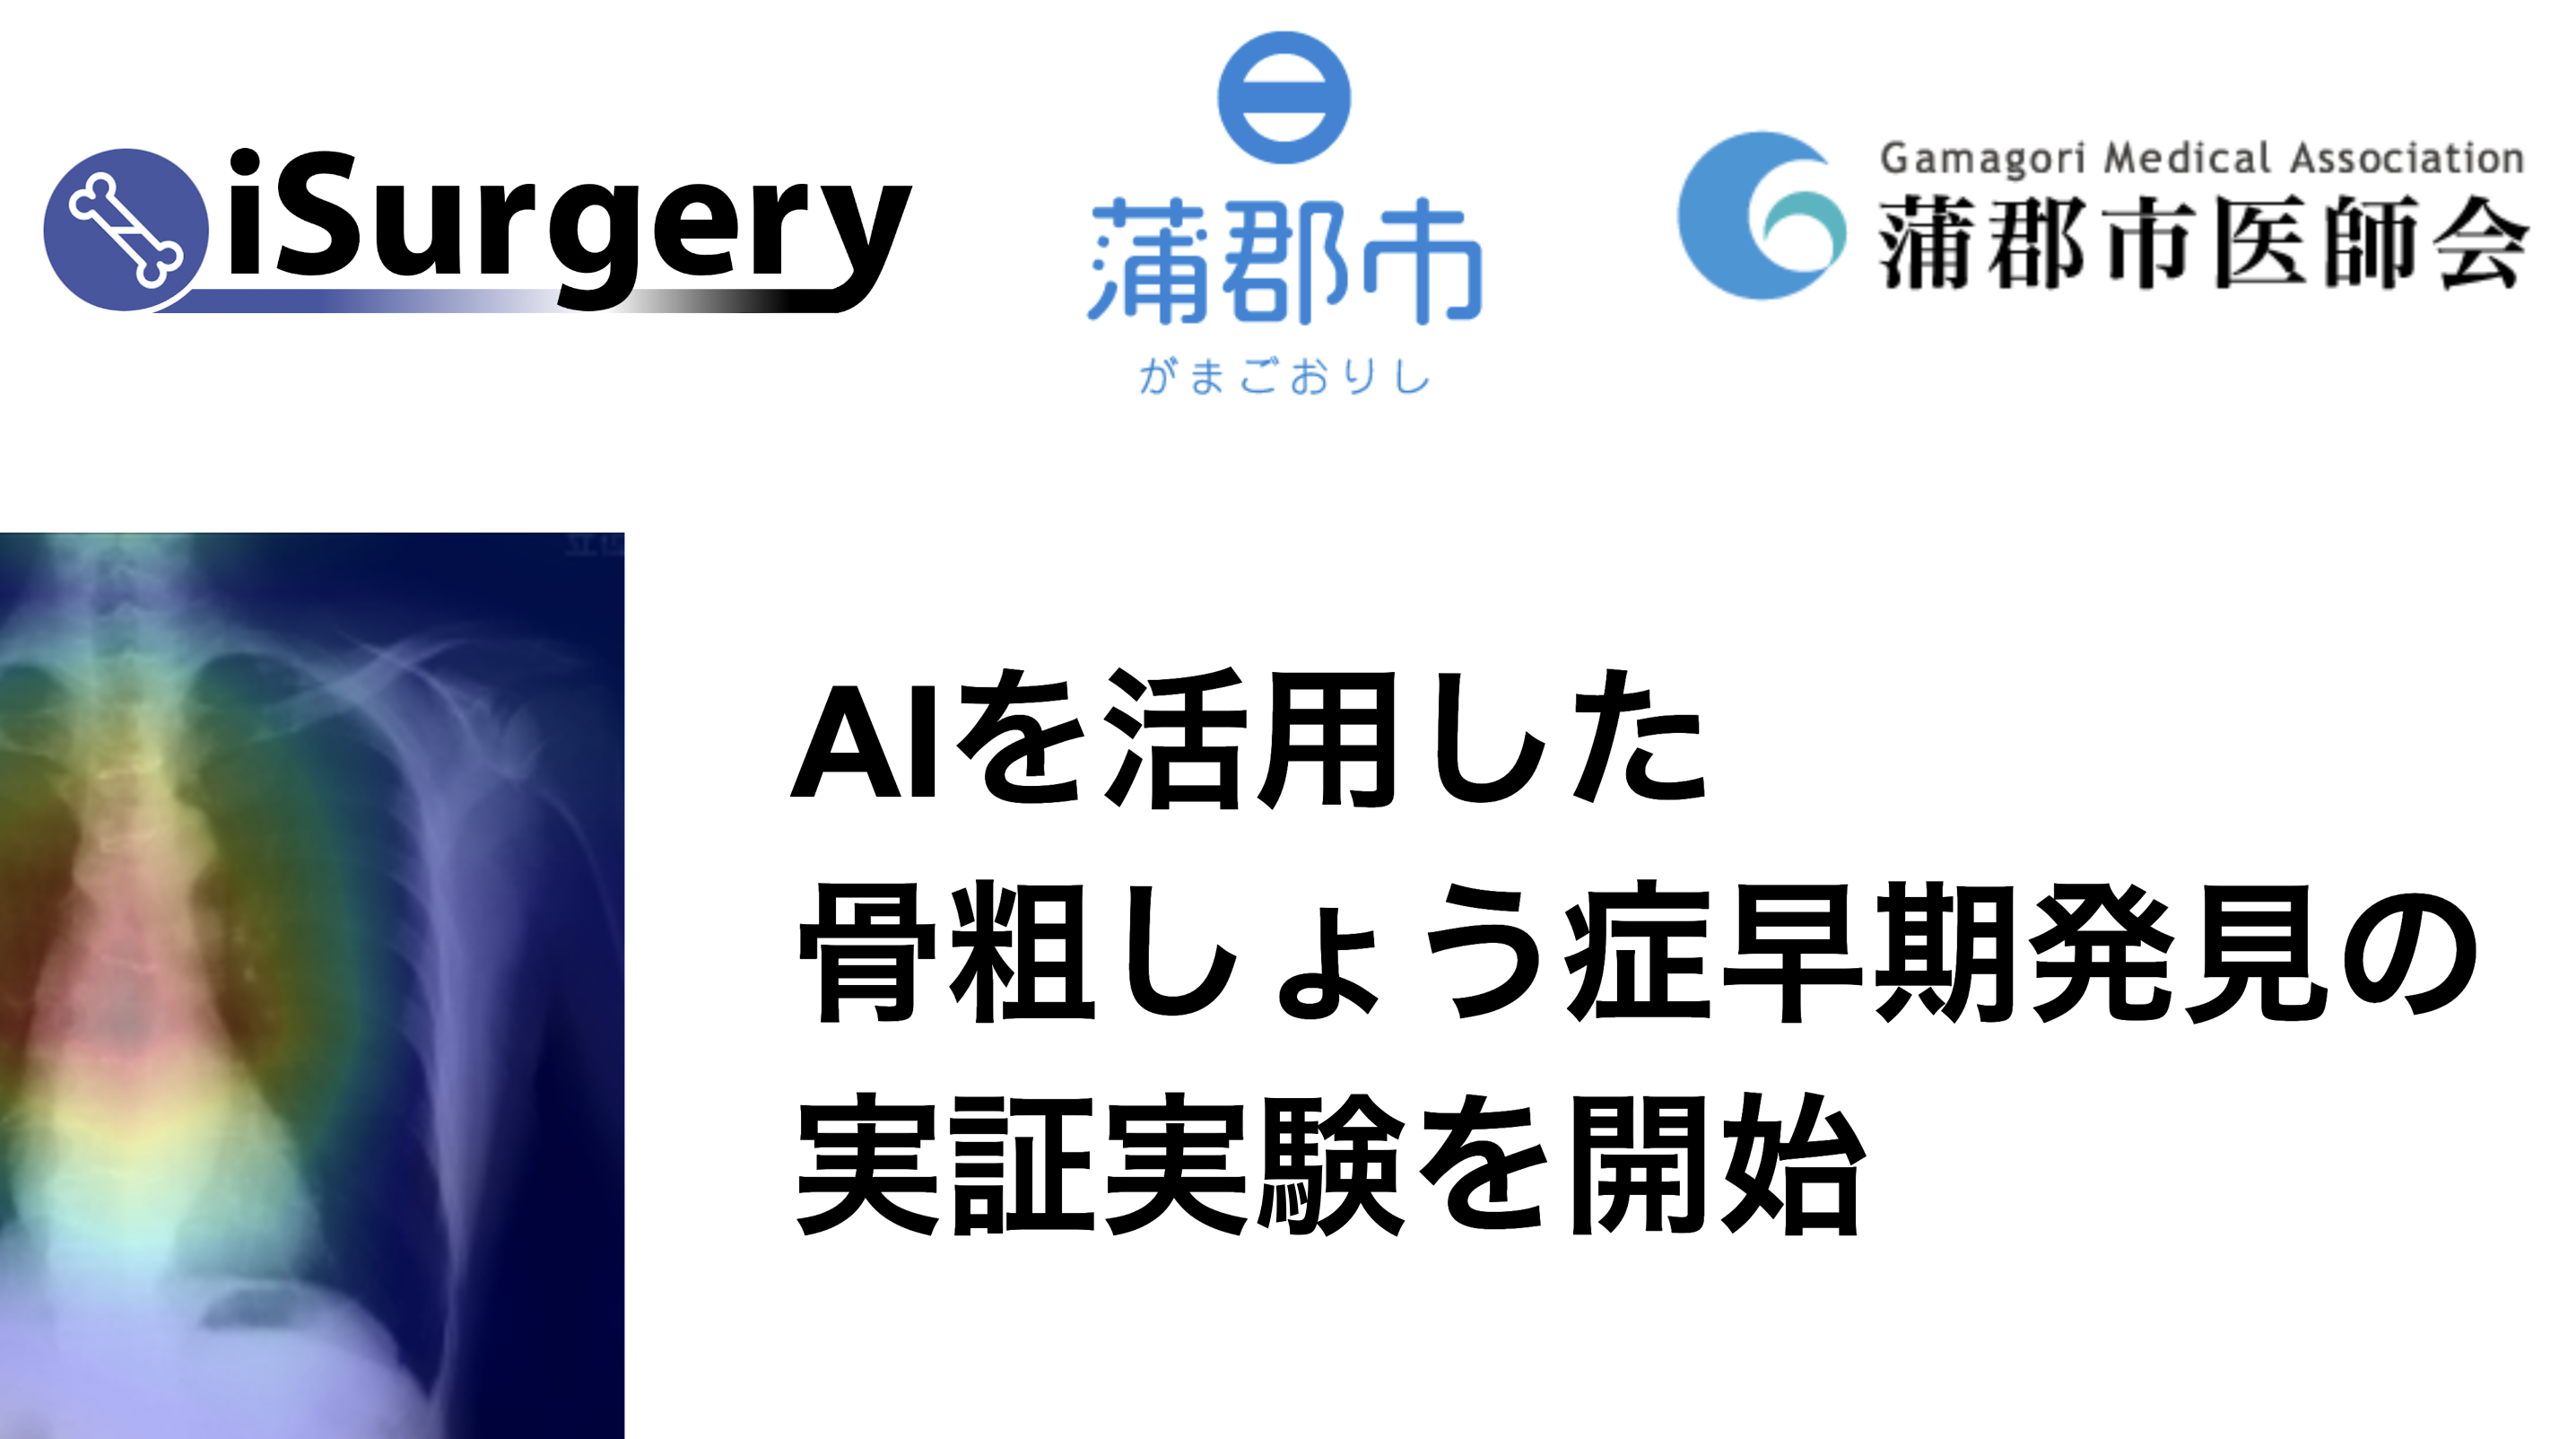 愛知県蒲郡市、iSurgery社とAI×骨粗しょう症の実証実験を開始[ニュース]